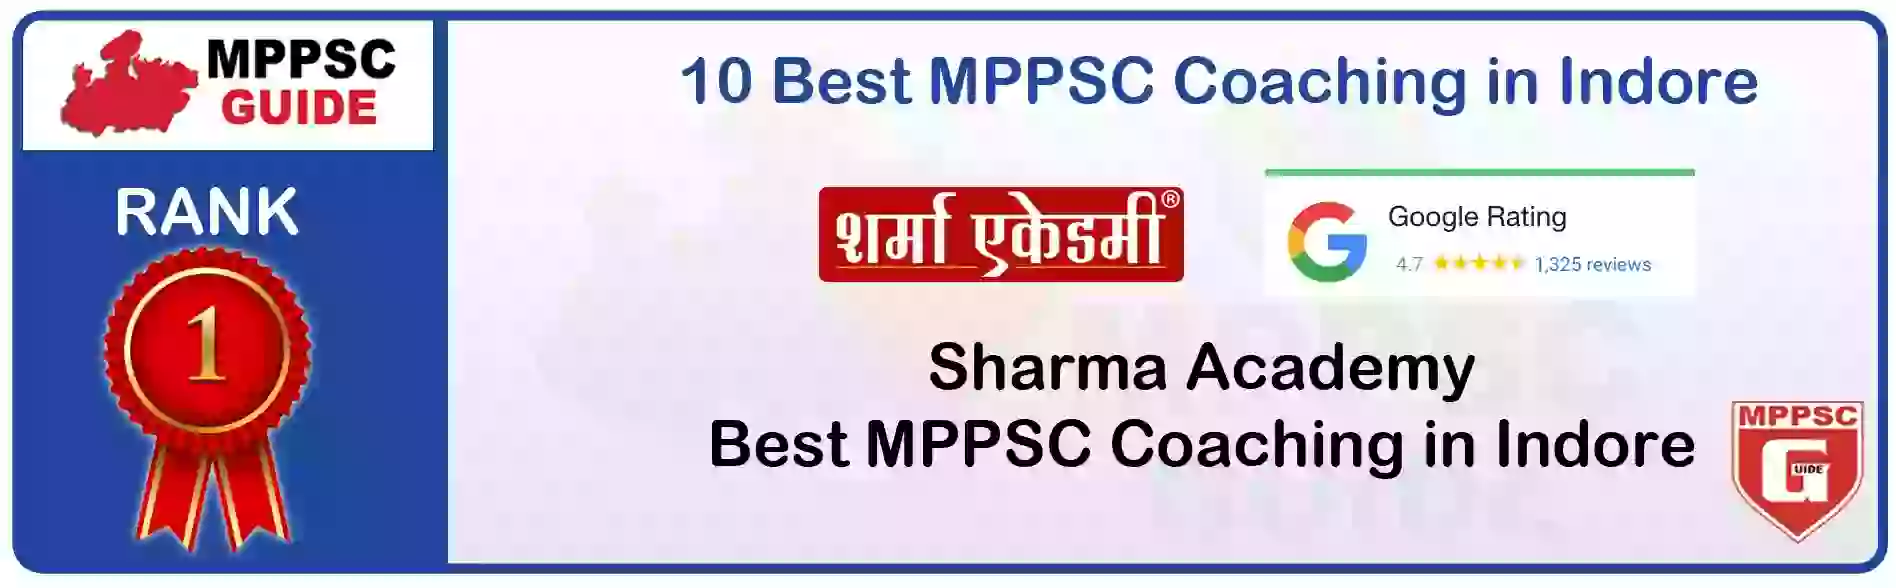 MPPSC Coaching in Panna, MPPSC Coaching Institute In Panna, Best MPPSC Coaching in Panna, Top 10 MPPSC Coaching In Panna, best mppsc coaching institute in panna, MPPSC Coaching Classes In Panna, MPPSC Online Coaching In Panna, mppsc coaching in Panna bhanwarkua